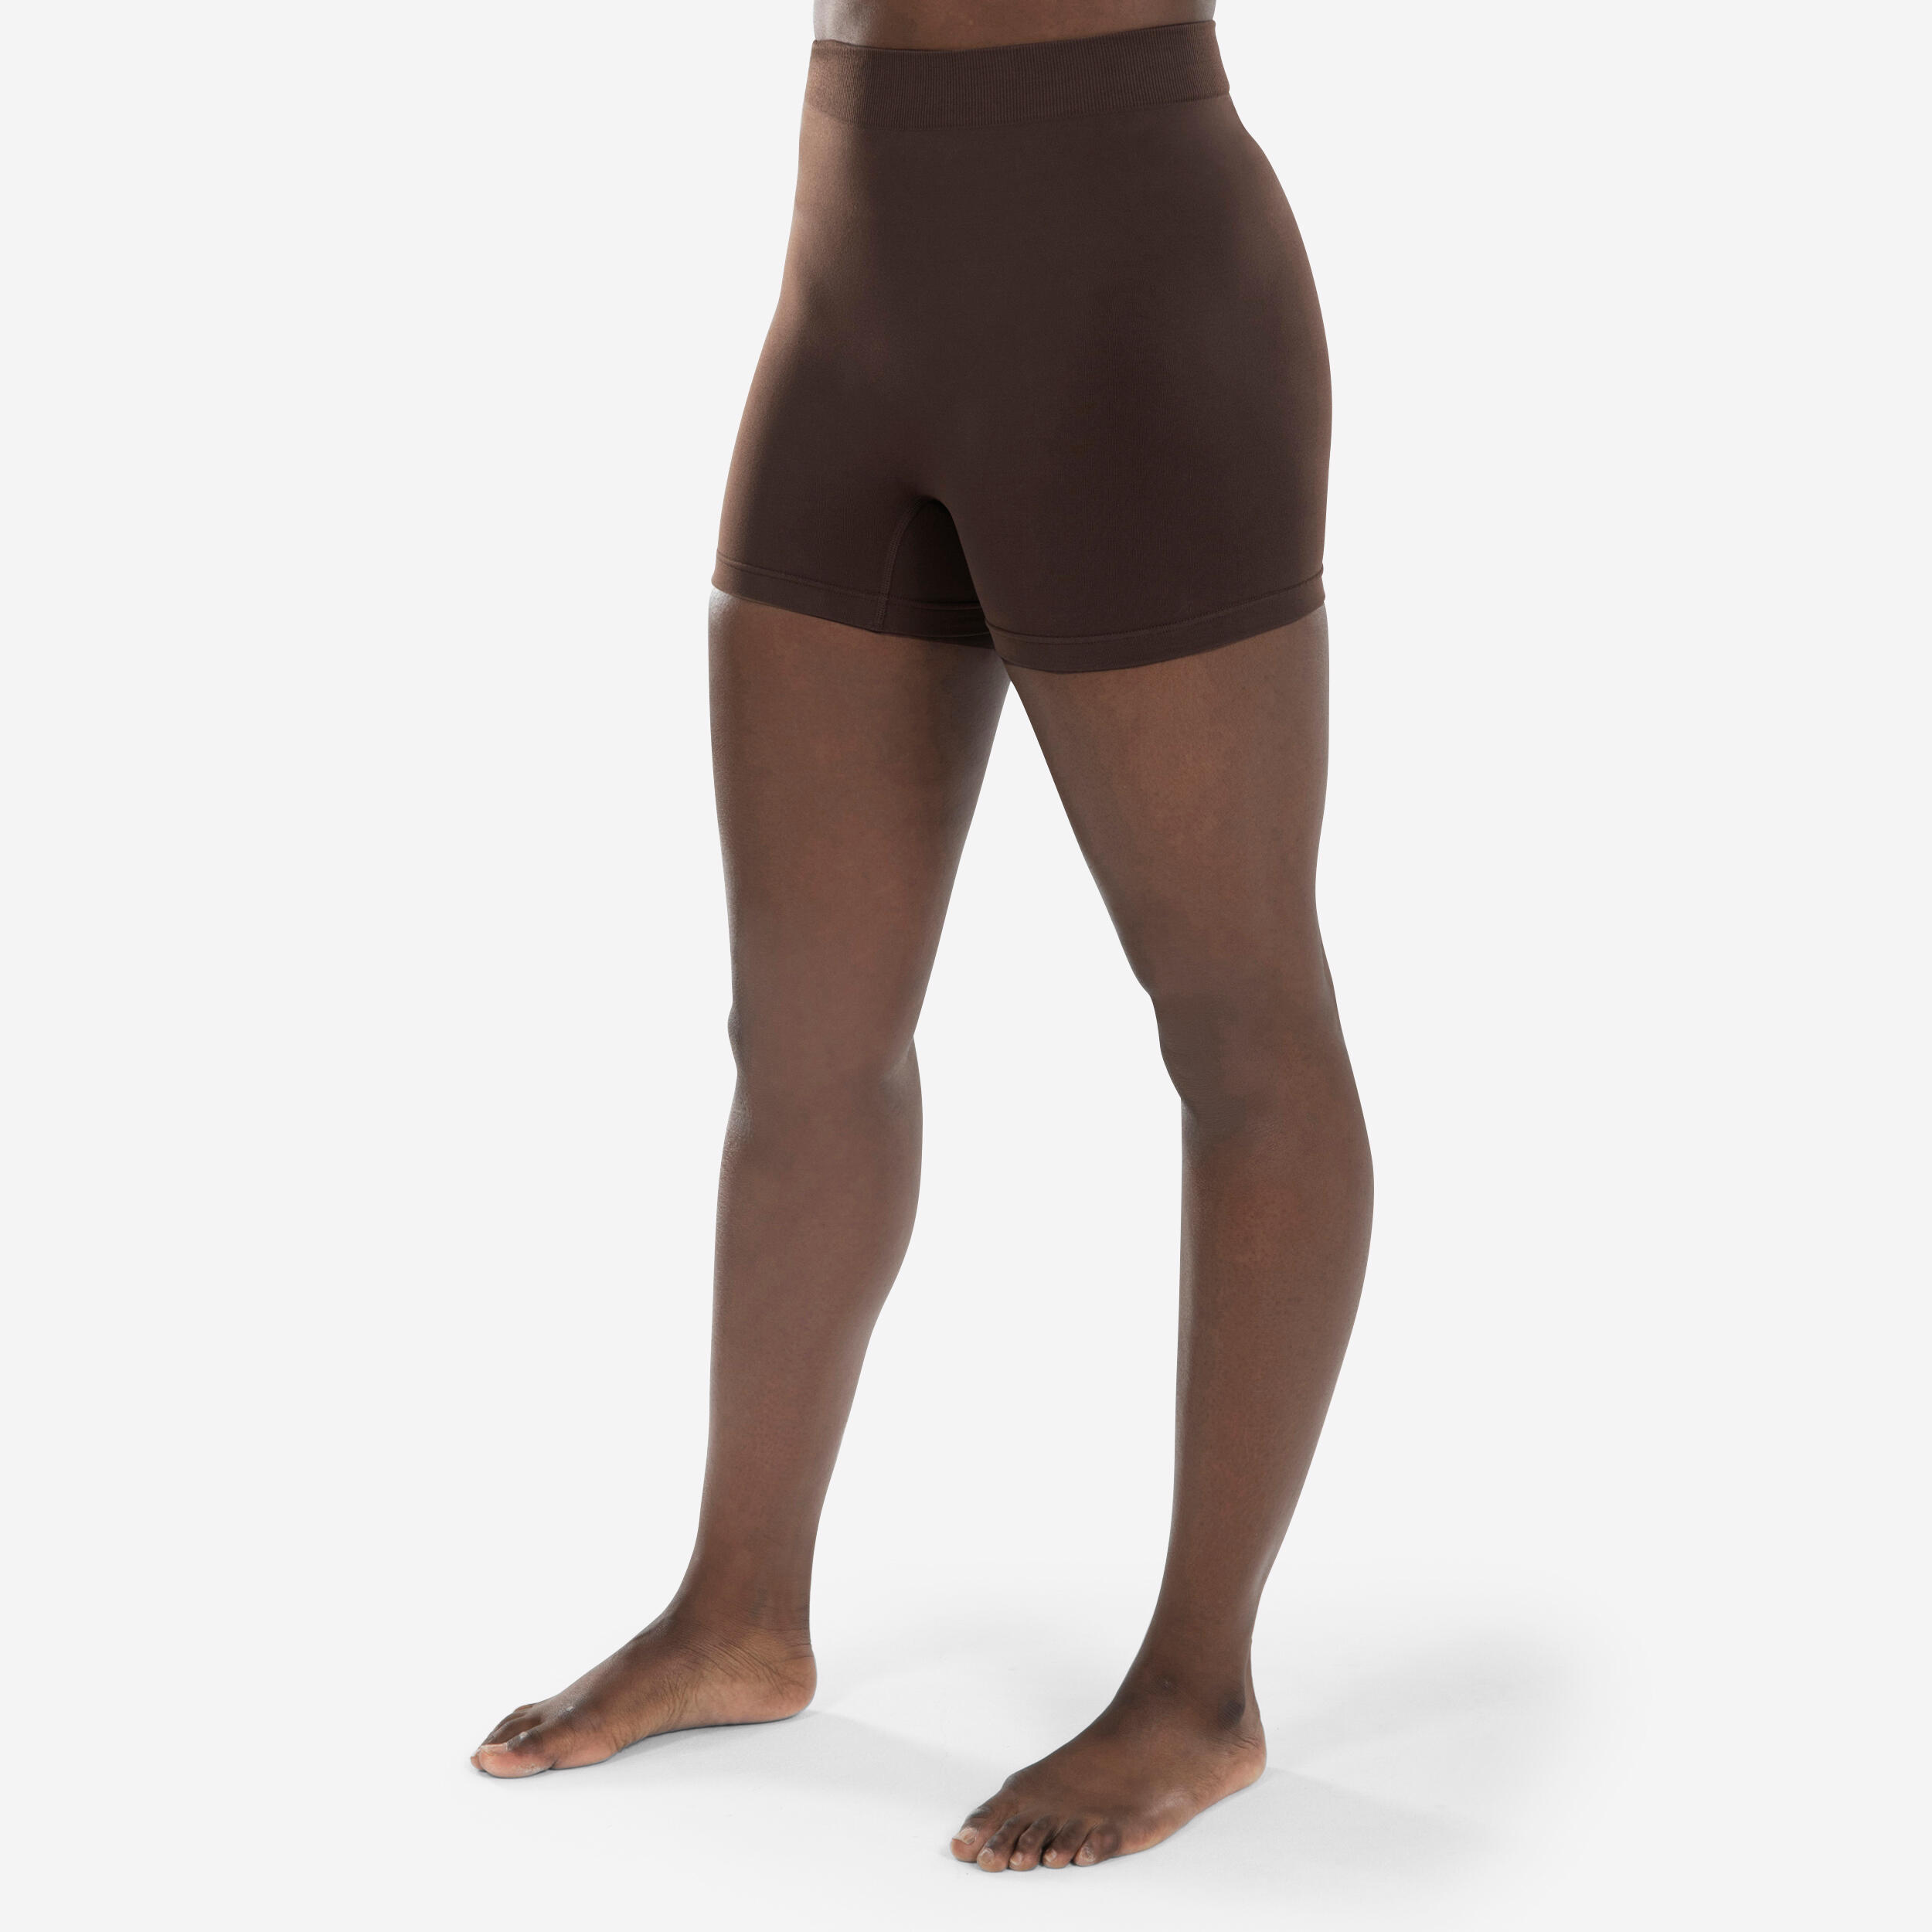 STAREVER Women's Seamless Modern Dance Shorts - Dark Chocolate